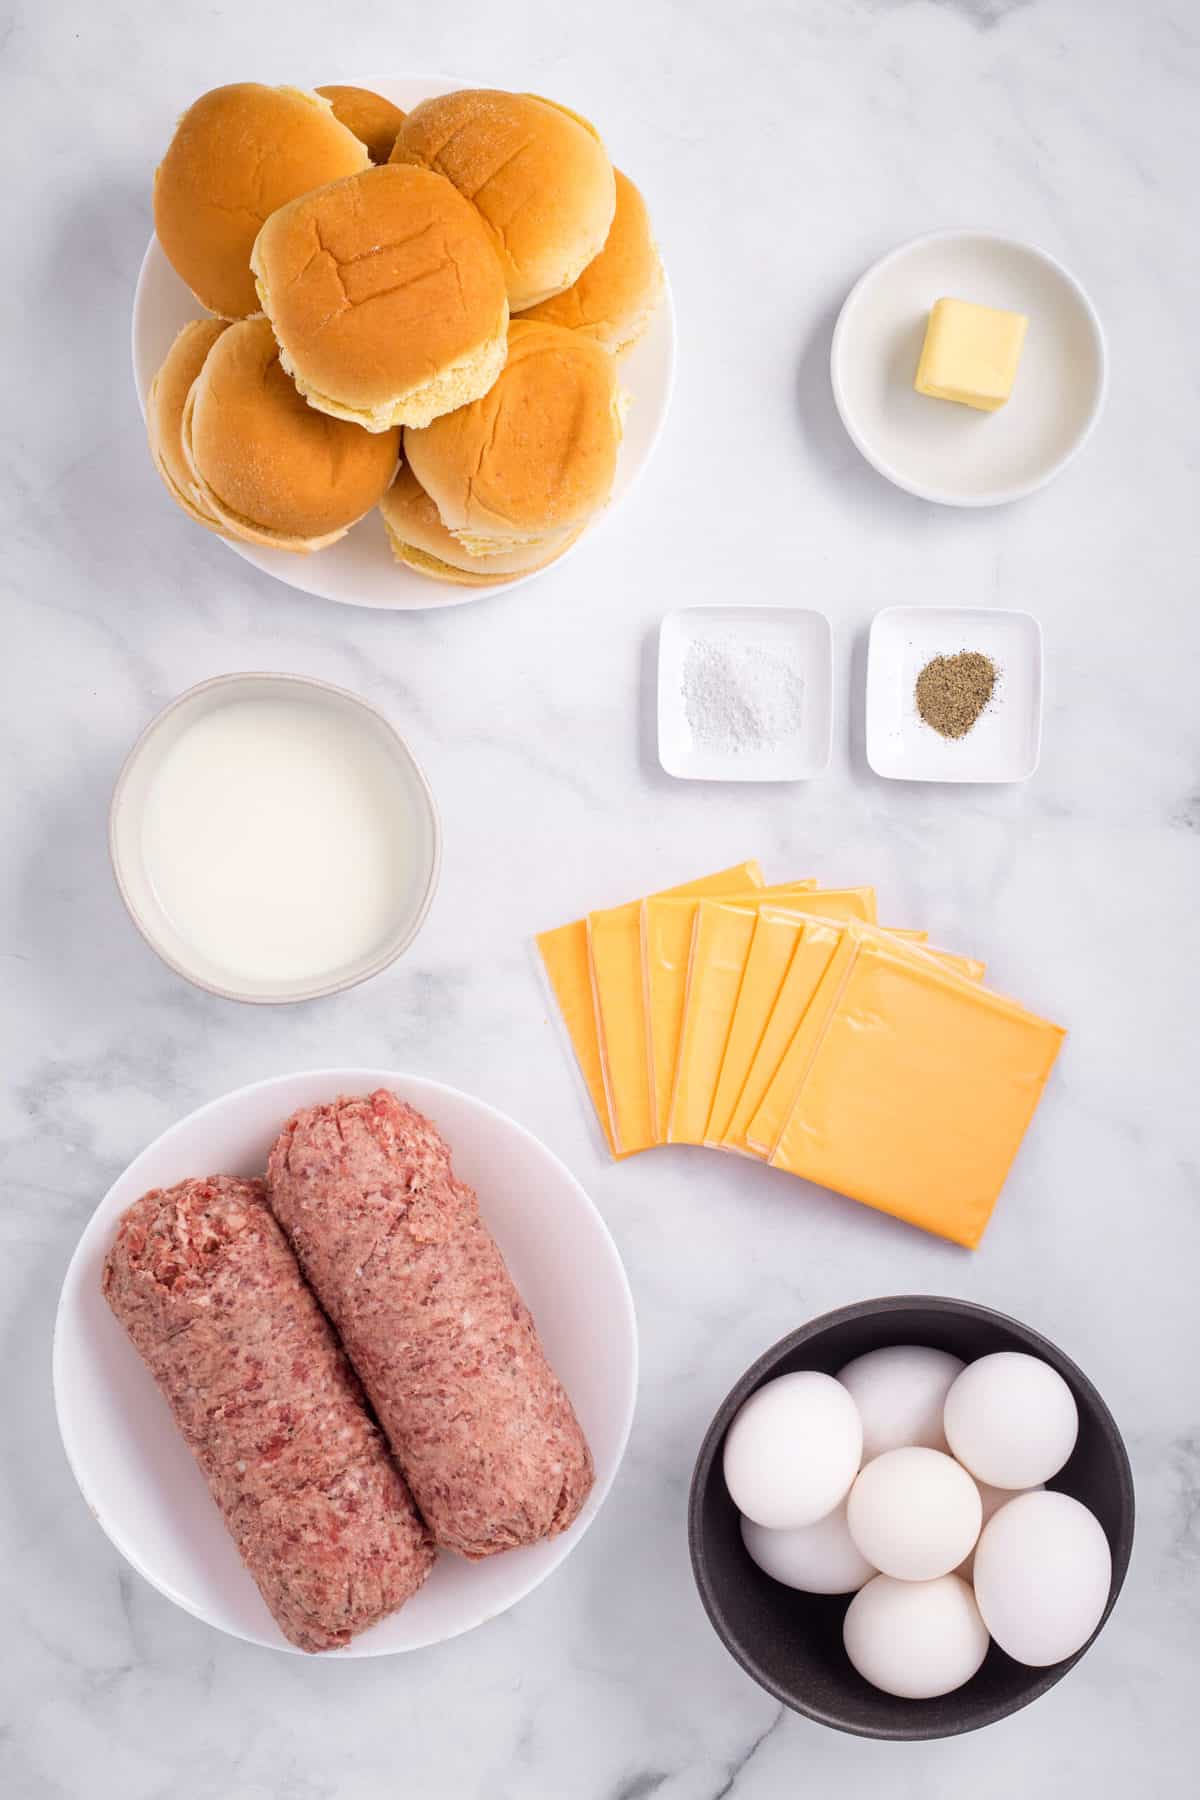 ingredients to make breakfast sliders at home